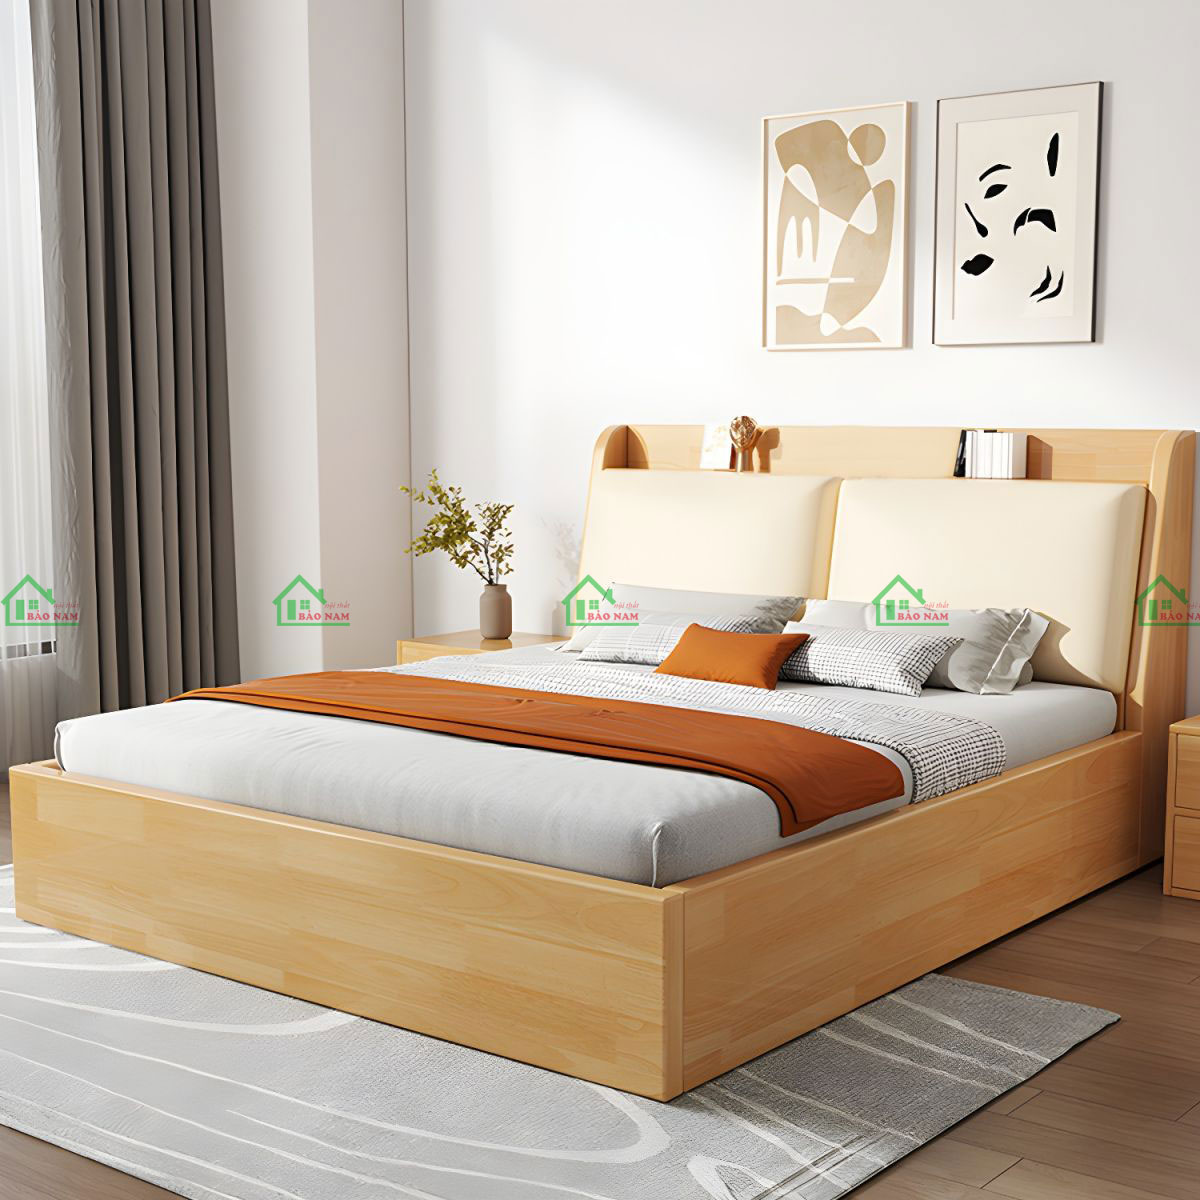 Giường ngủ vân gỗ sồi đẹp